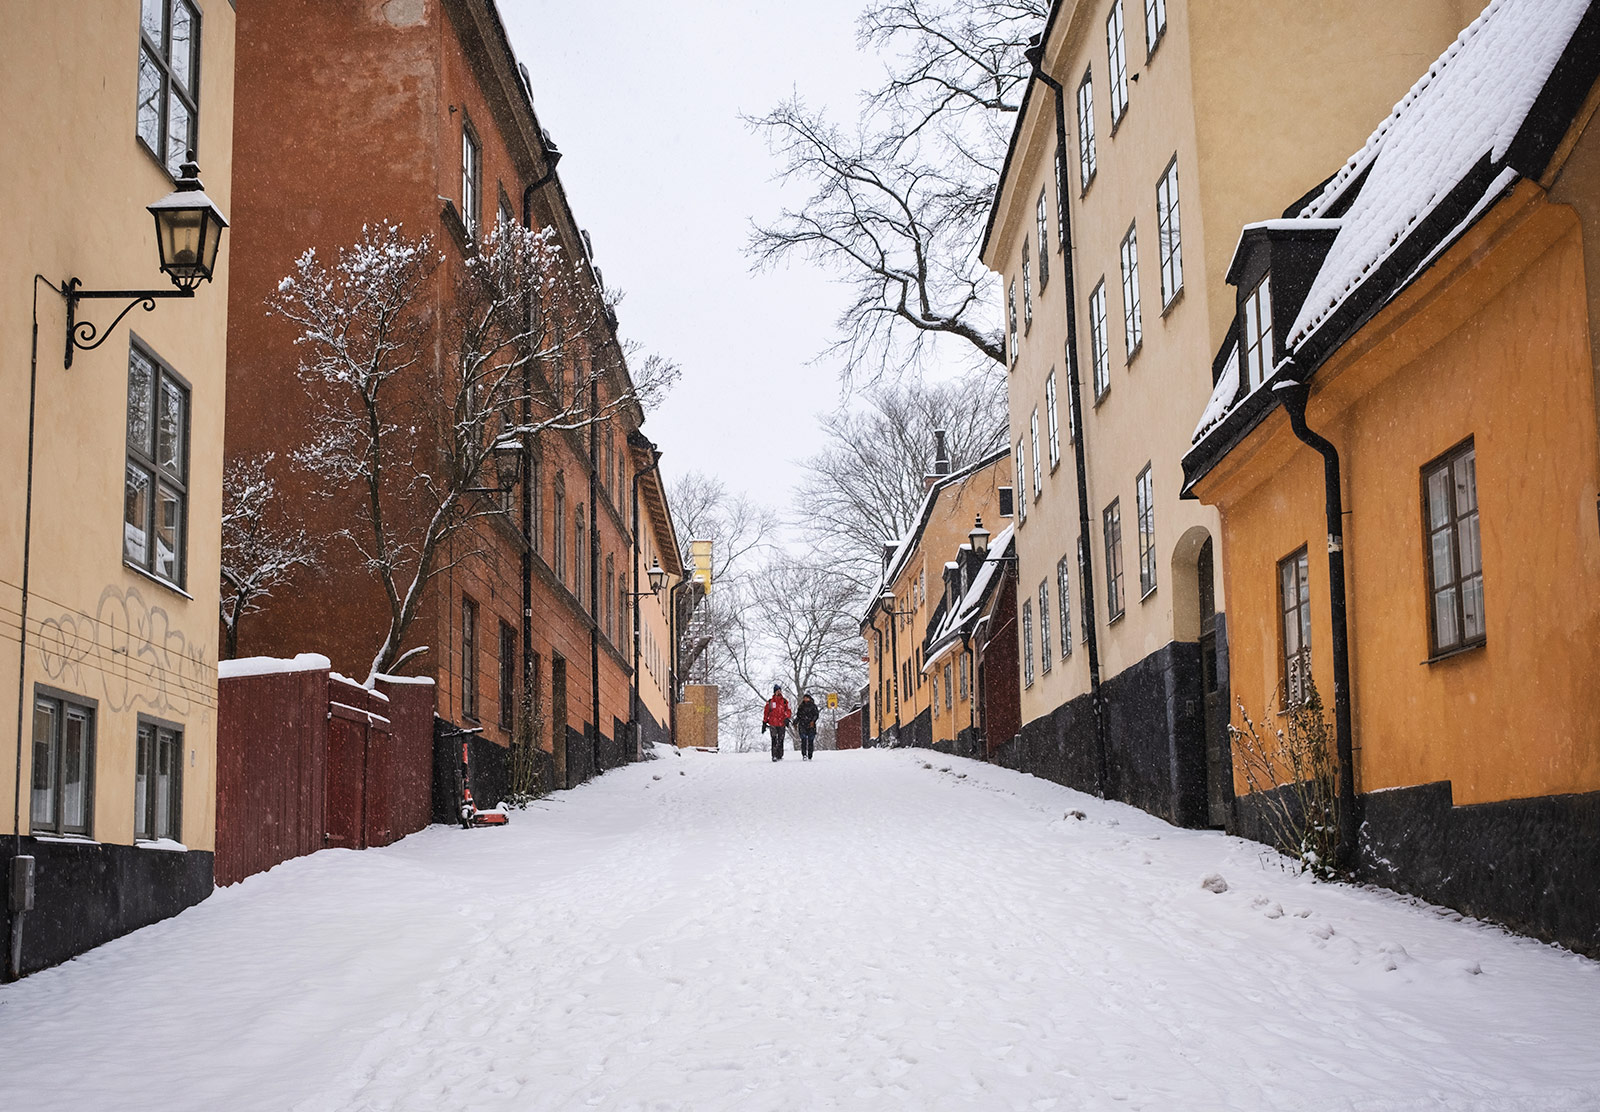 Snow on old street